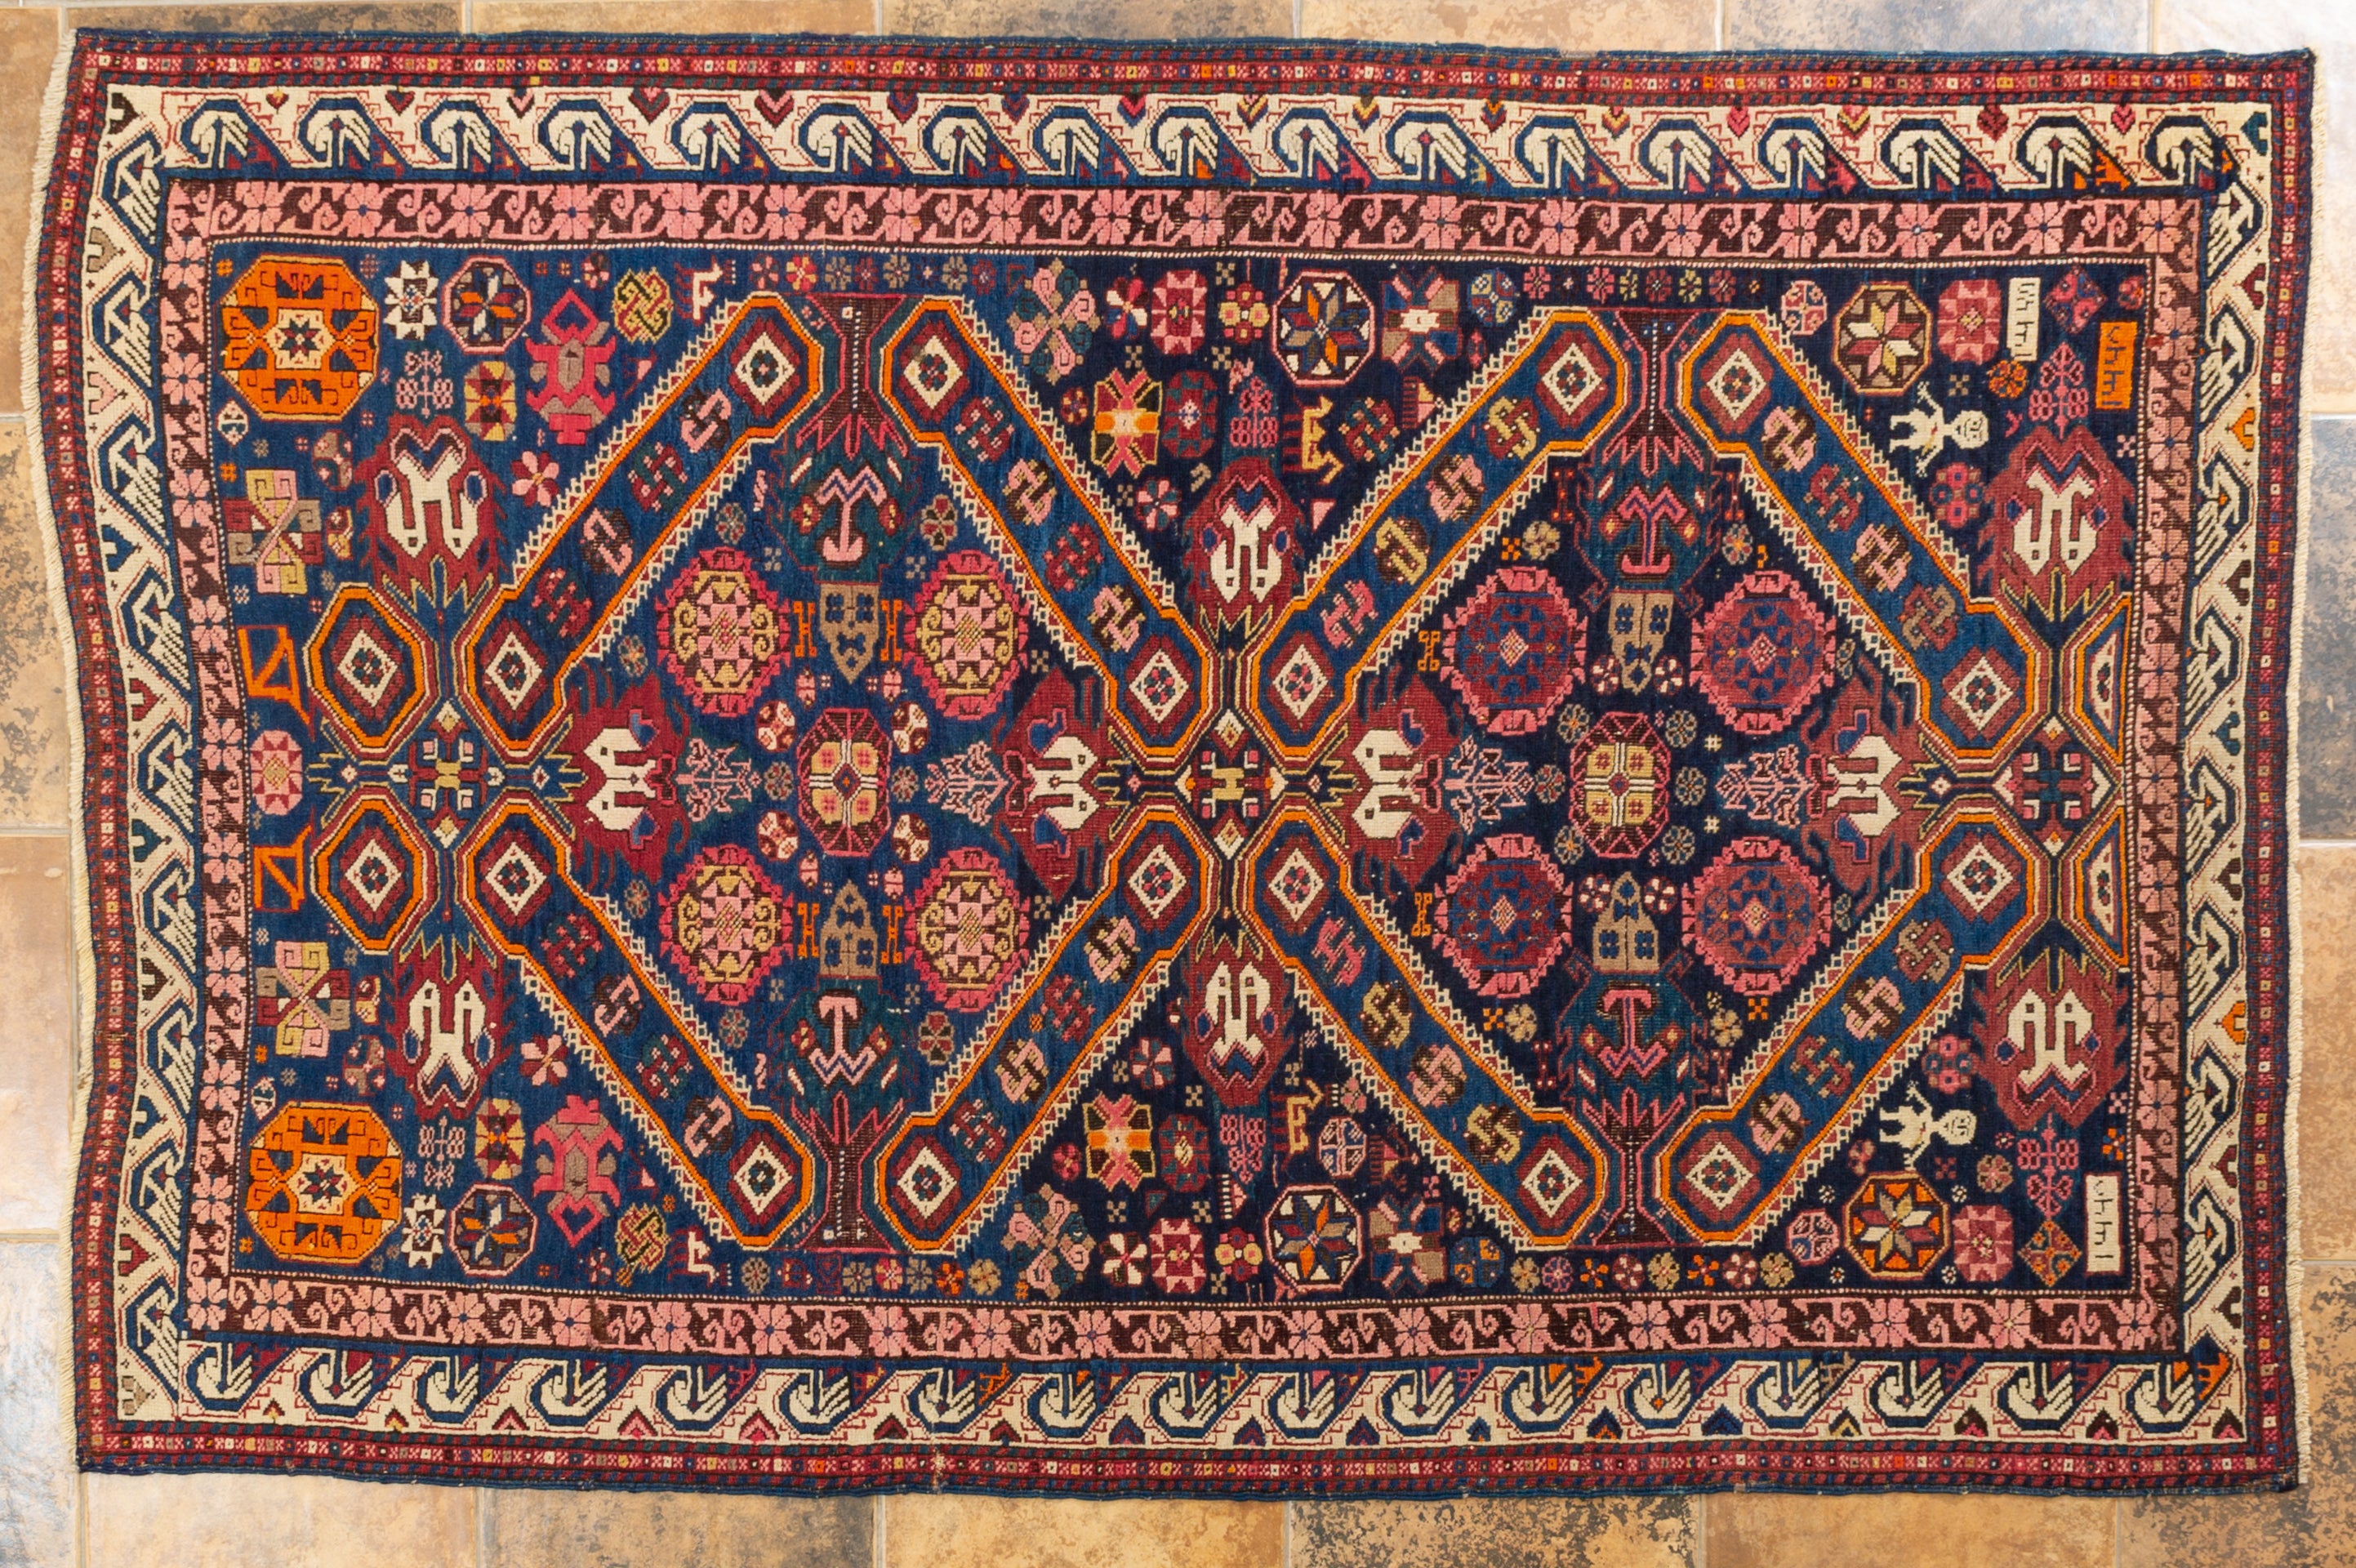 nr. 432 - Antiker SHIRVAN von 1328 (=1910) in schönen Farben auf blauem Grund. Einer der schönsten kaukasischen Teppiche, die ich je gesehen habe. 
Das Feld ist vollständig mit vielen Mustern bedeckt, auch mit kleinen Männerfiguren, die den Weber